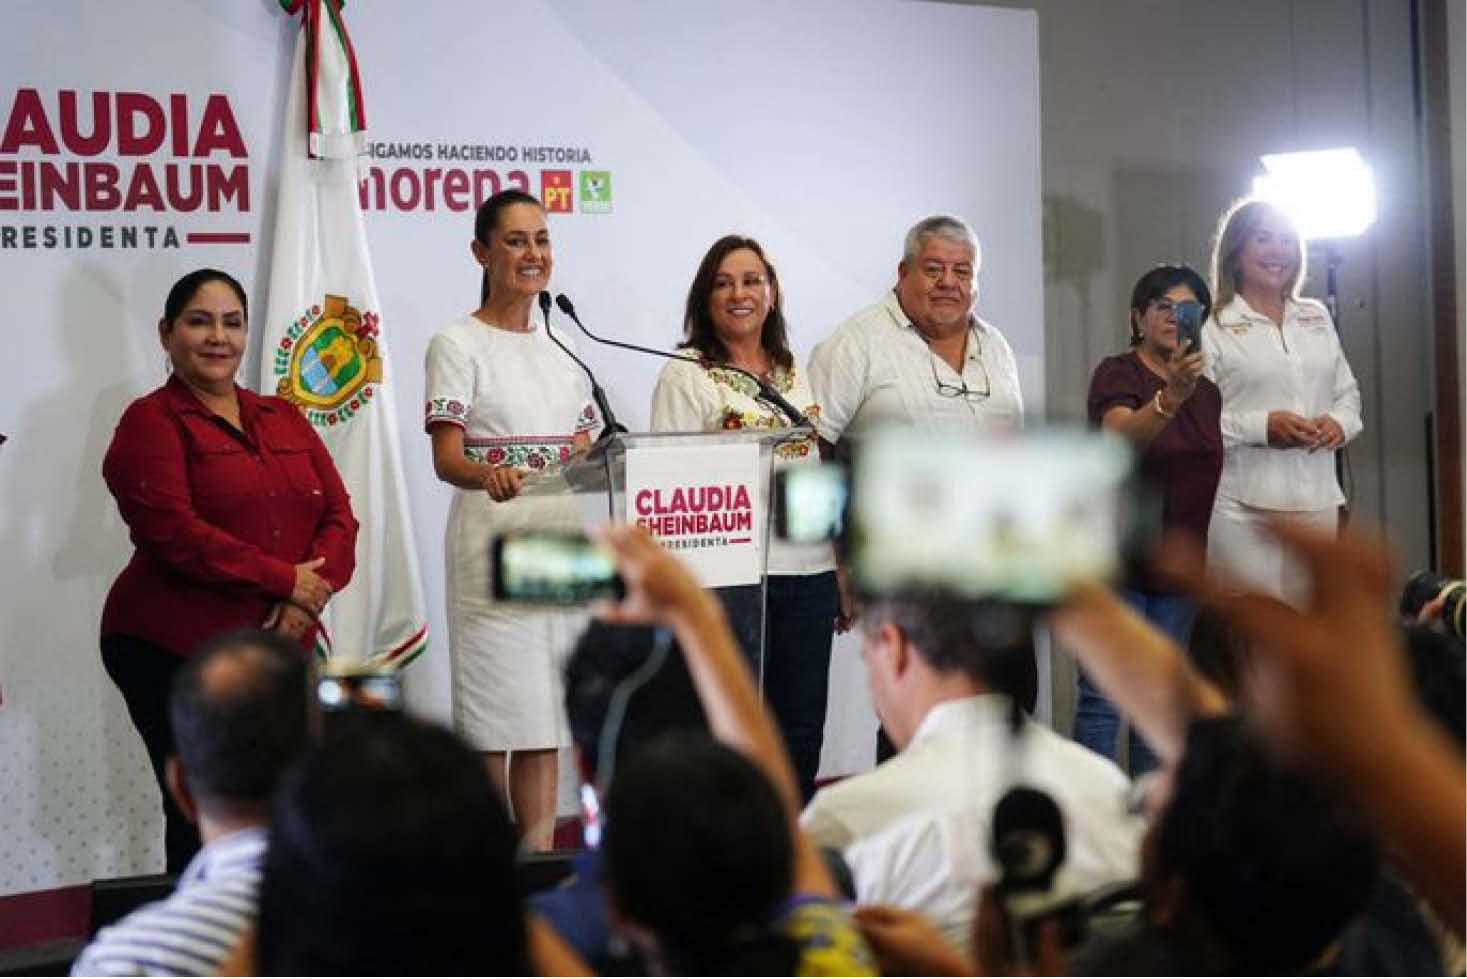 La candidata de la coalición “Sigamos Haciendo Historia” a la Presidencia de México, Claudia Sheinbaum.